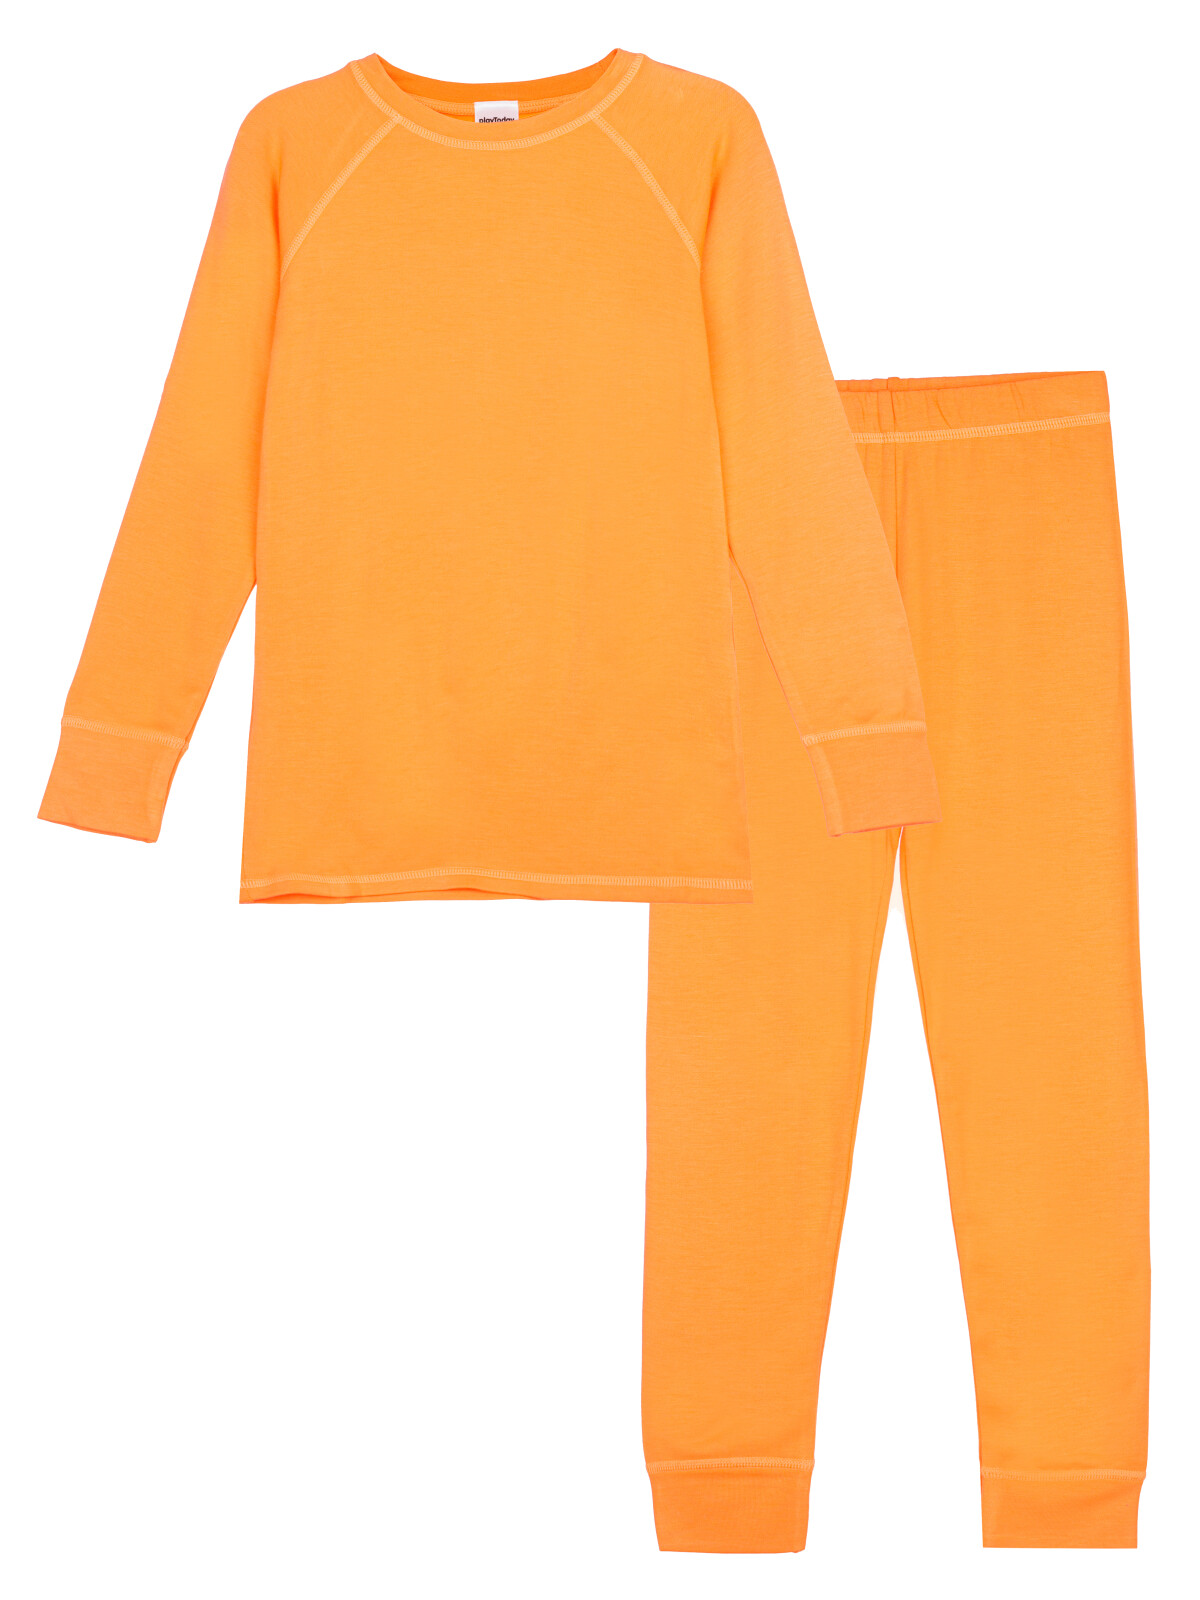 Термокомплект для девочек PlayToday: брюки, толстовка, оранжевый, 122